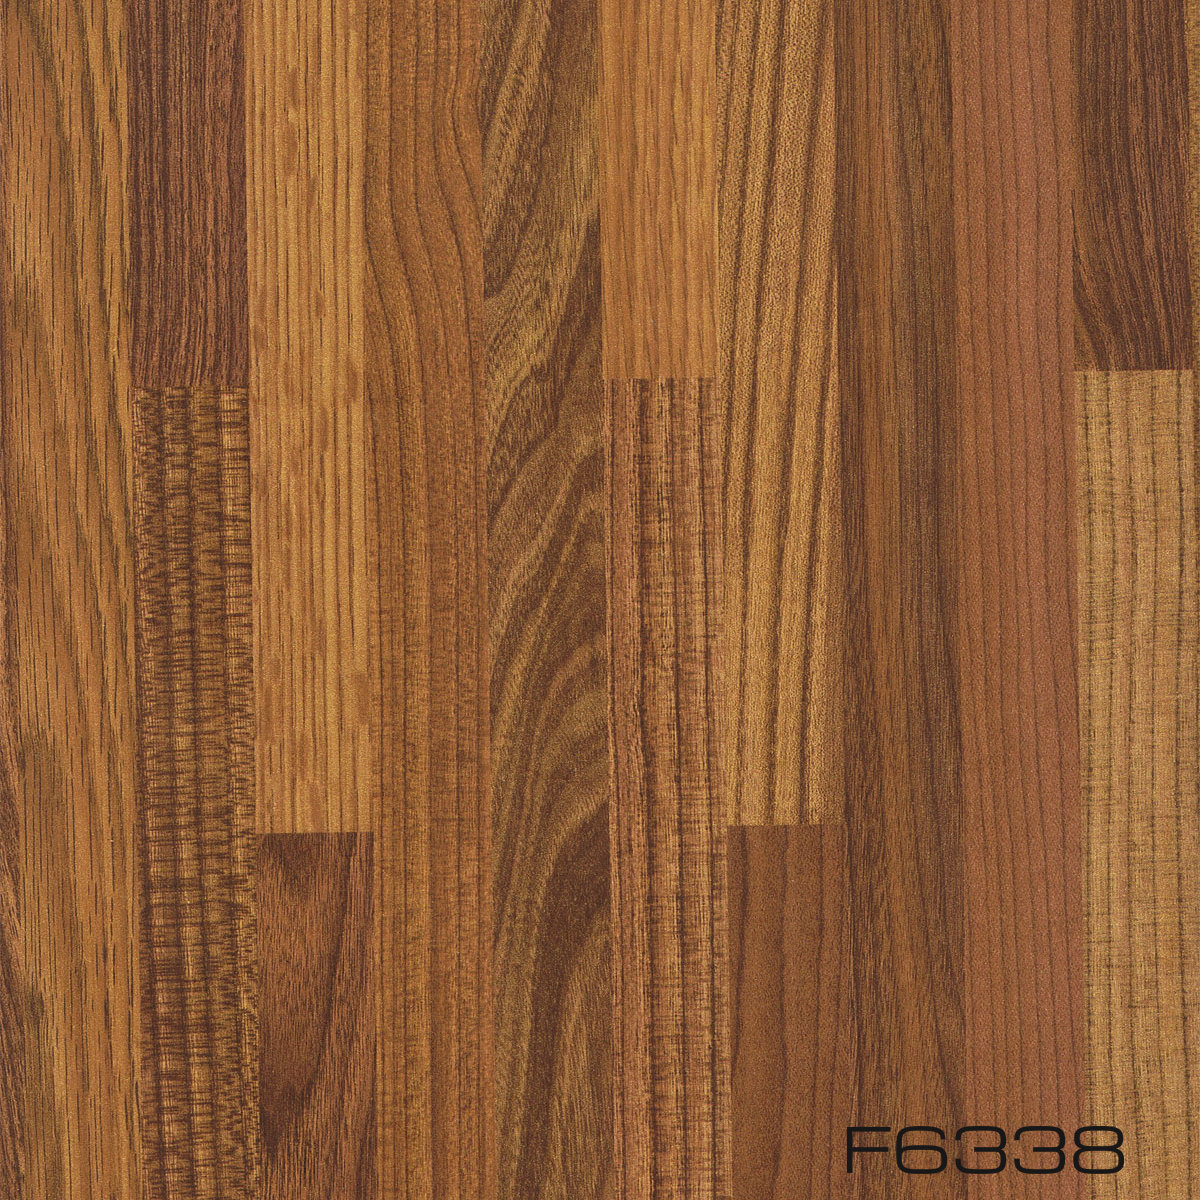 Sàn gỗ công nghiệp F6338 bán chạy